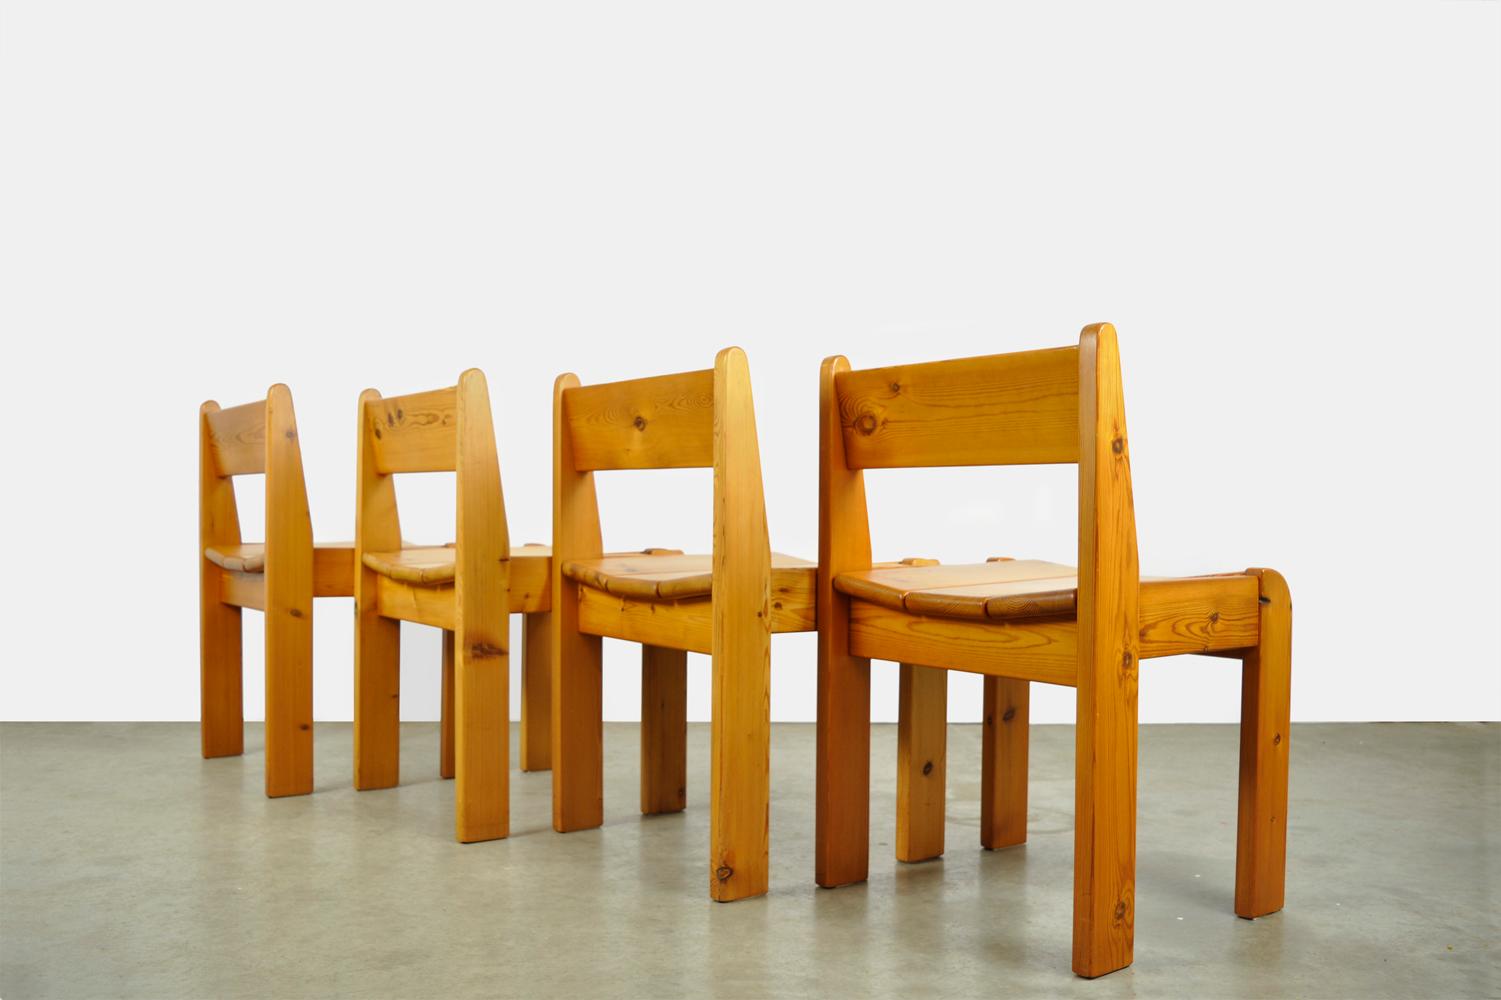 Les détails du cadre et de l'assise sont magnifiques.

Chaises de table à manger en bois brutalistes conçues par Ate van Apeldoorn et produites par Houtwerk Hattem, années 1970. 
Chaises de table de salle à manger lourdes en bois de pin massif.